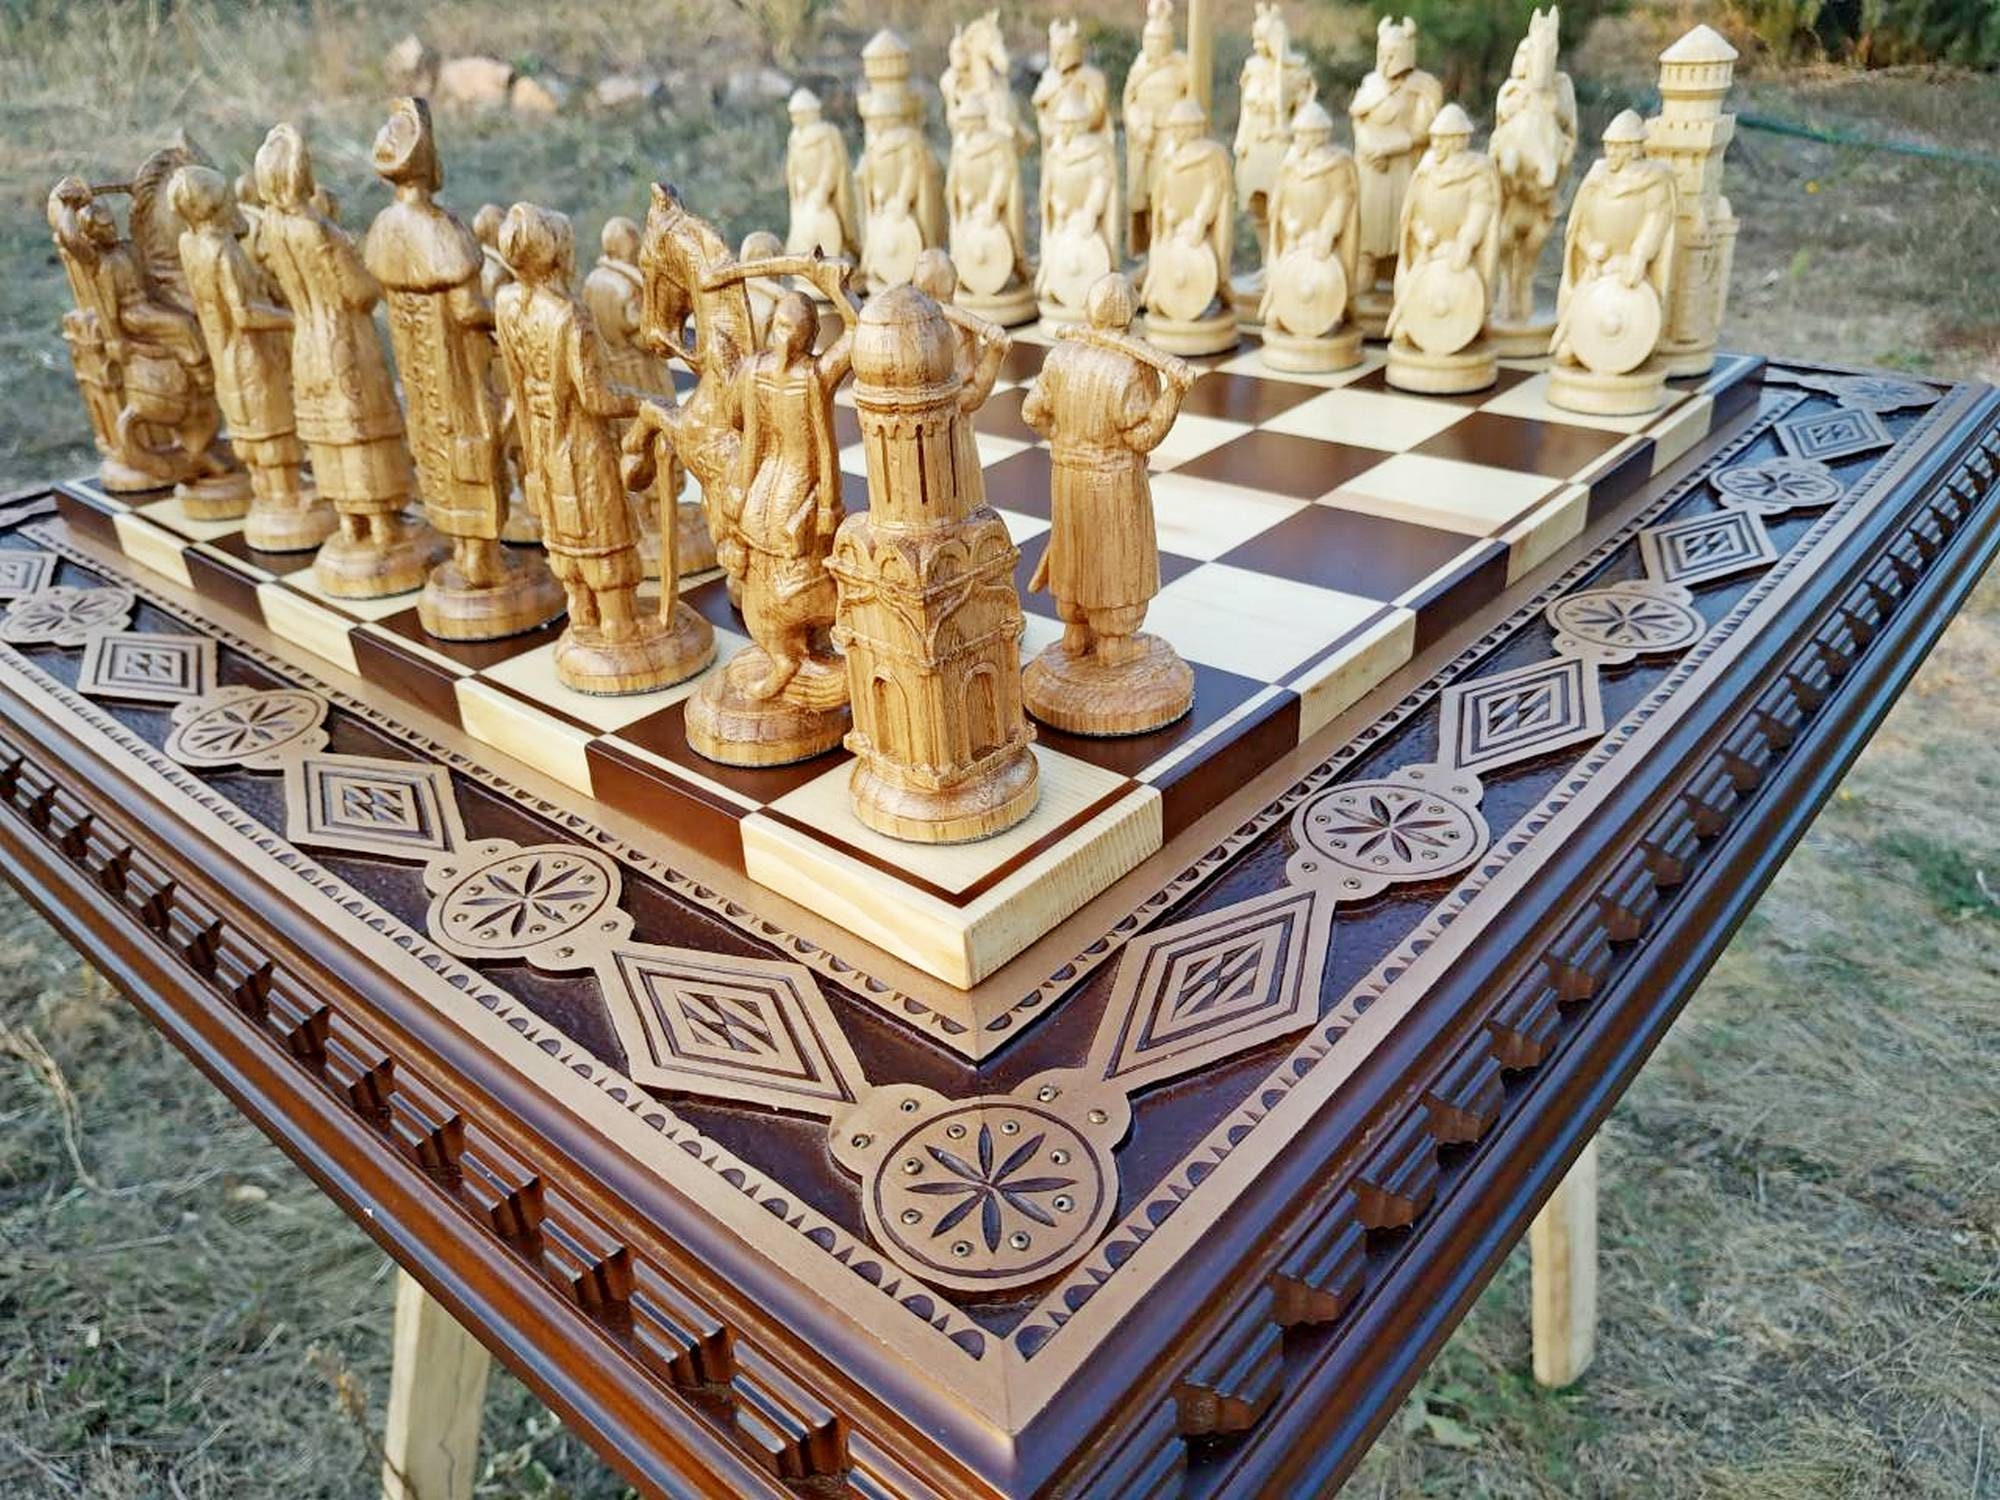 Making a Custom Chess Board & Box